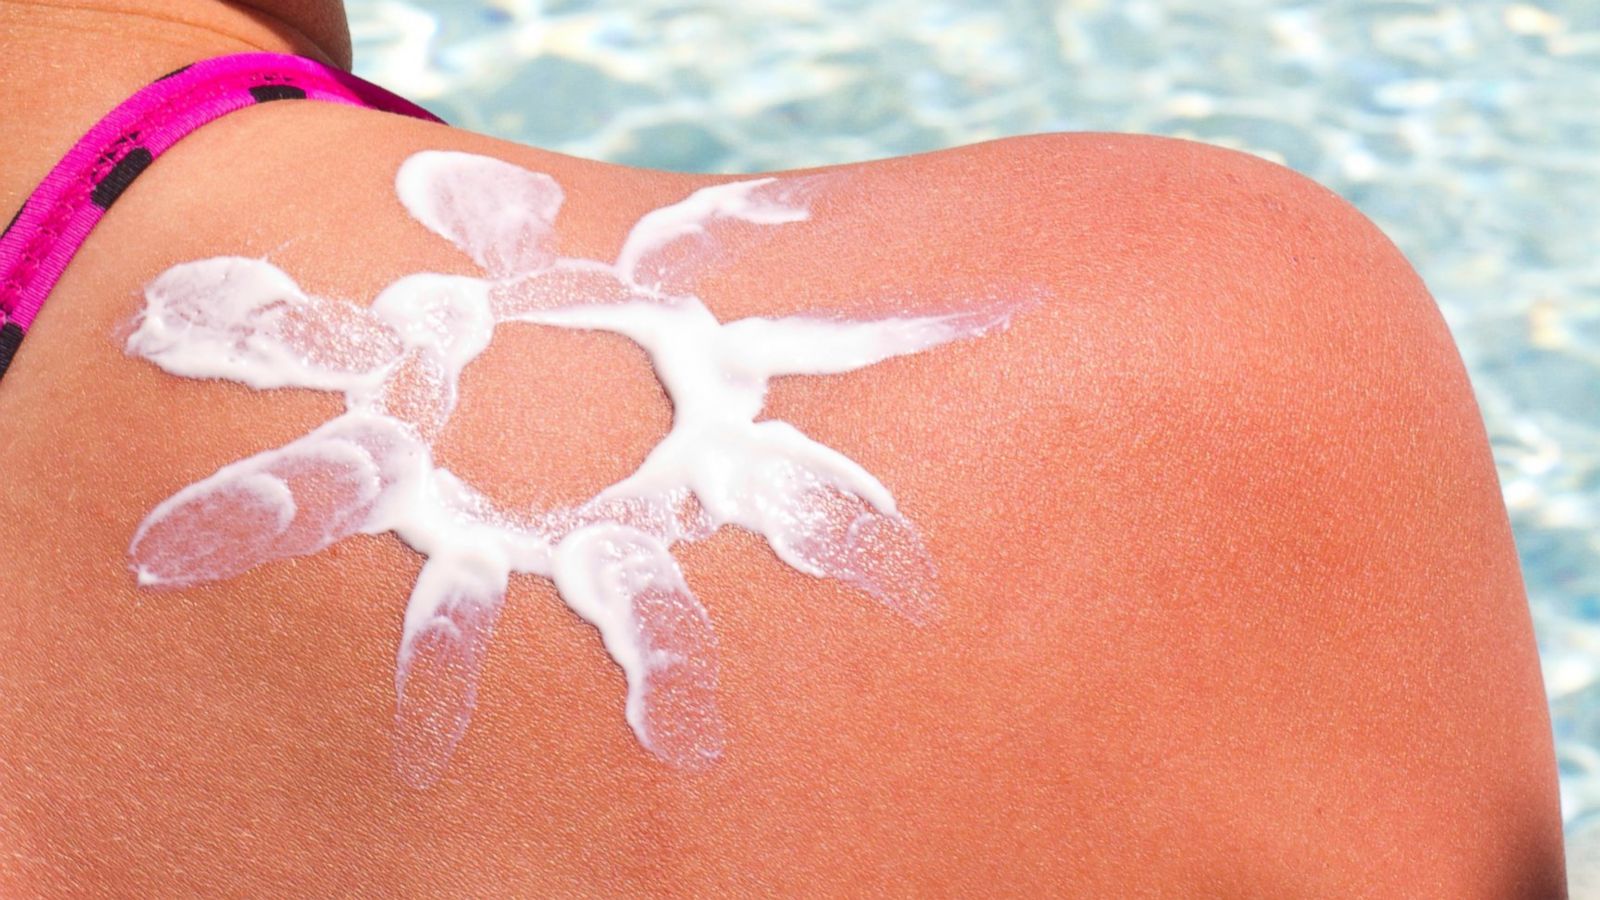 People are getting sunburned on purpose for sunburn tattoos